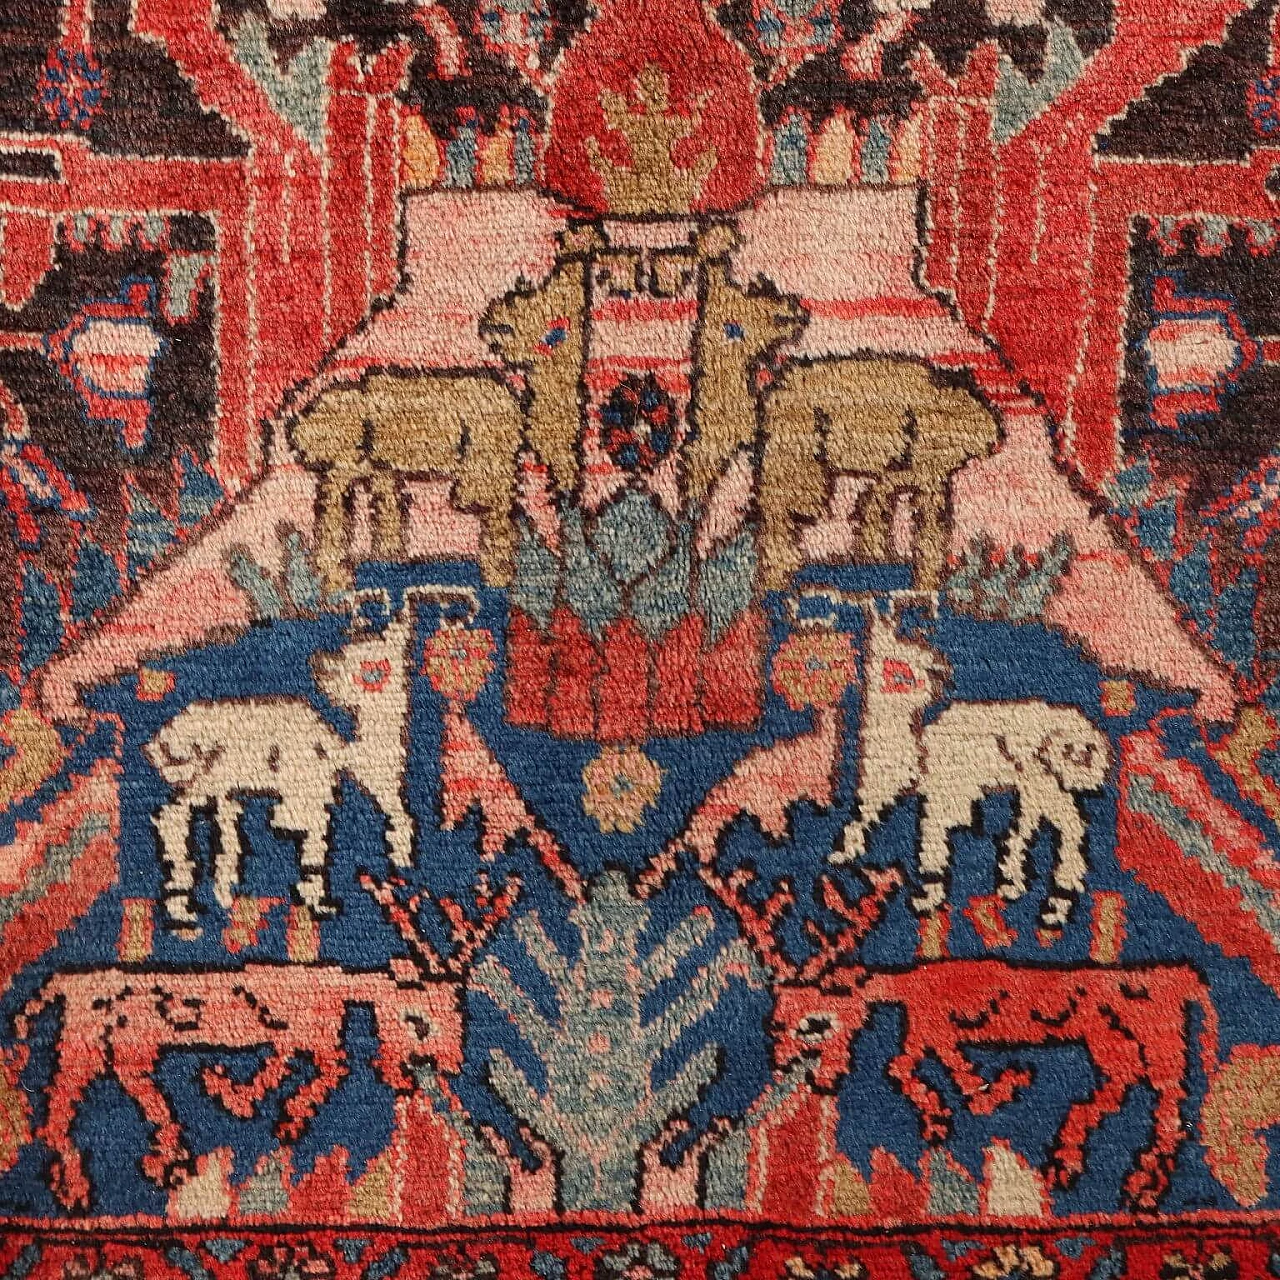 Iranian wool and cotton Malayer rug 3